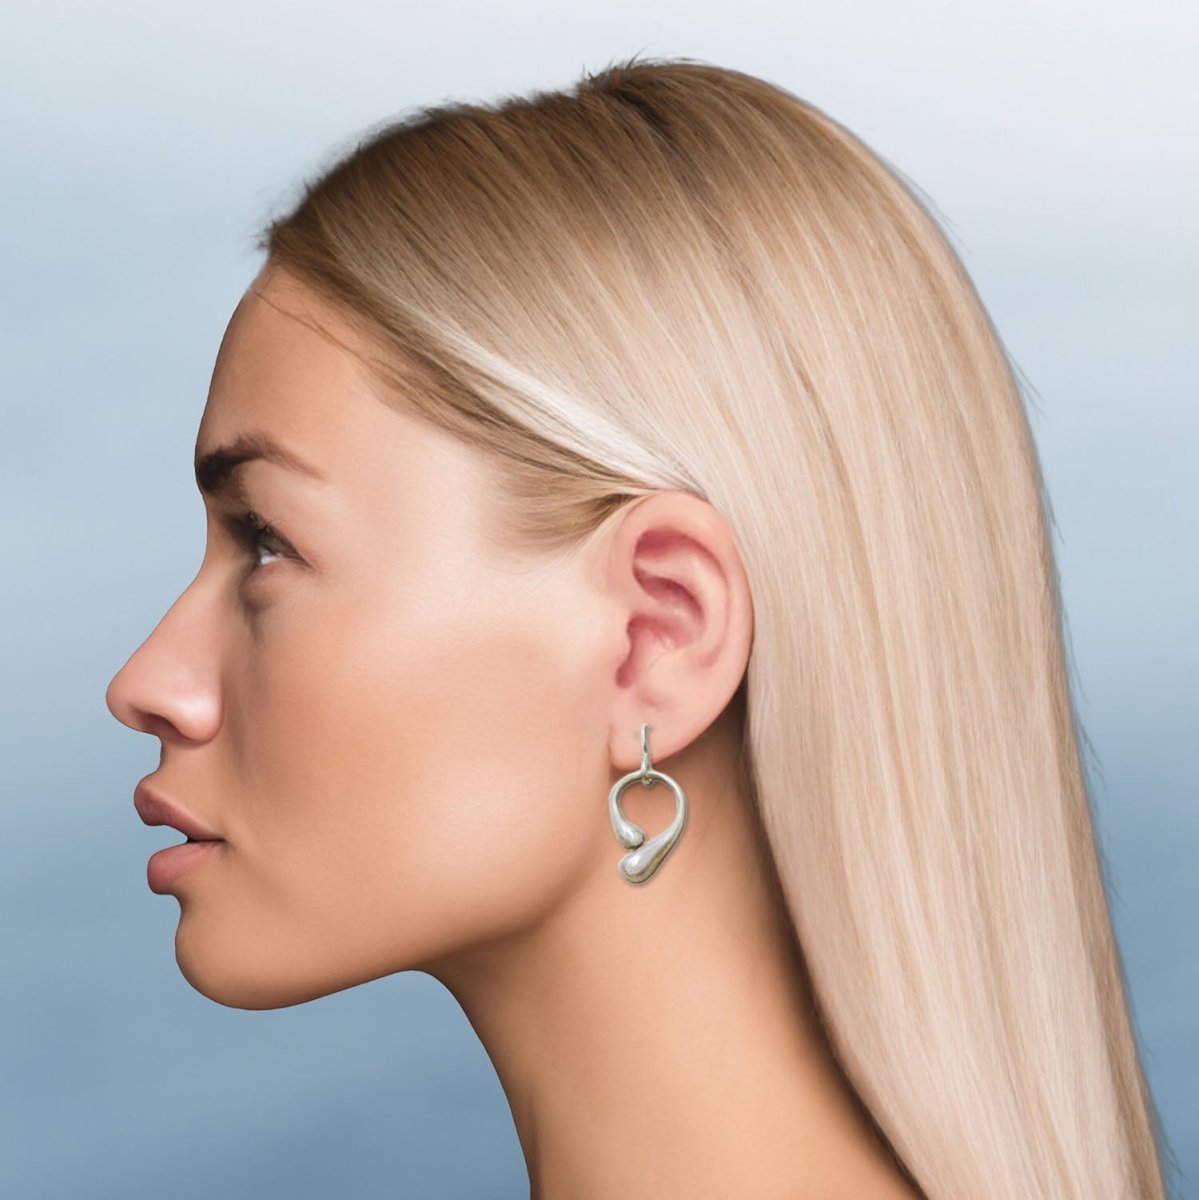 Melted Fairy Bone Hook Earrings in Sterling Silver - Luxe Design Jewellery